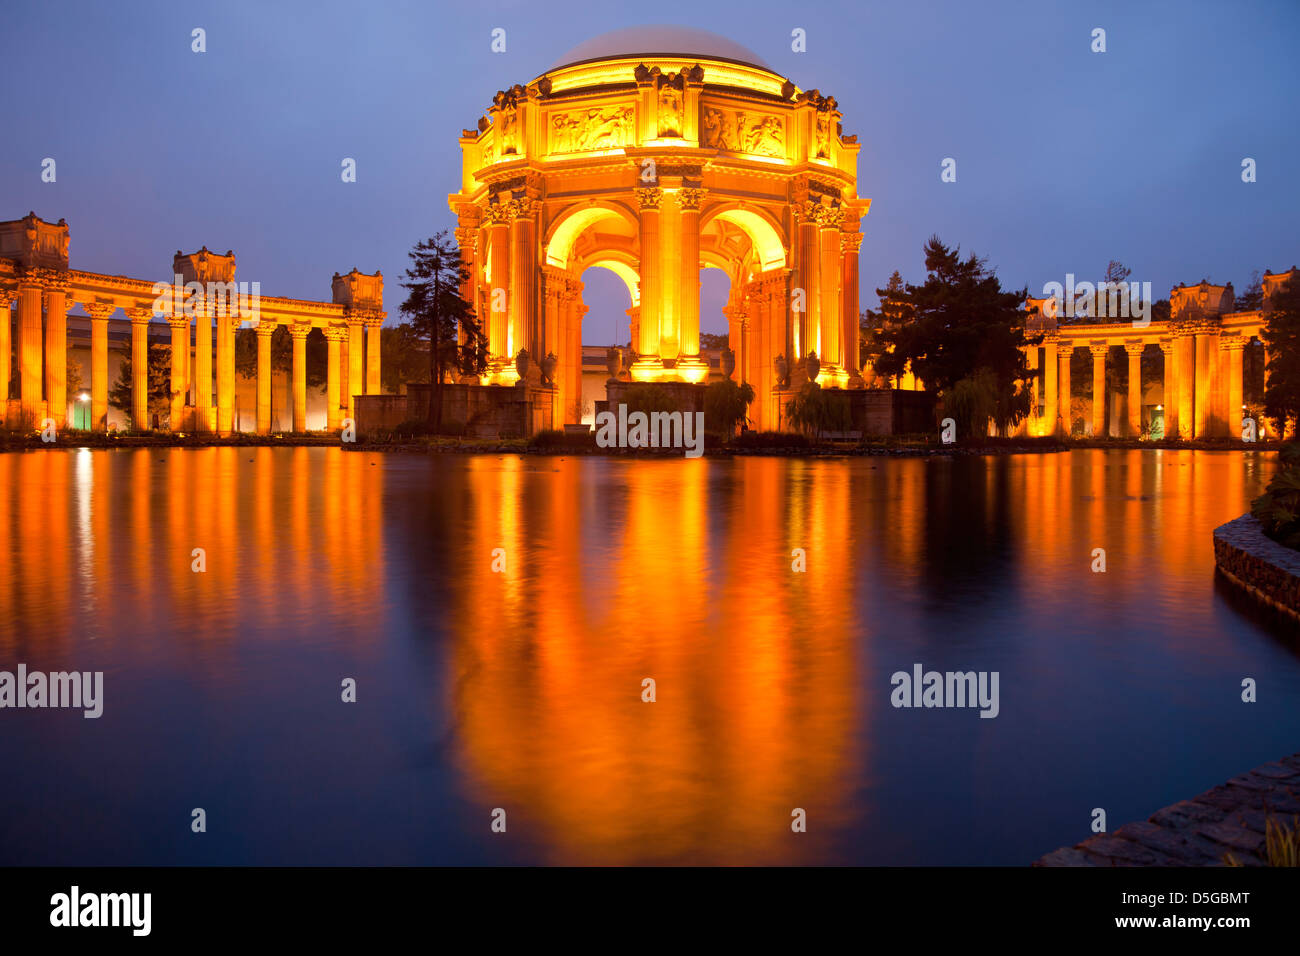 die beleuchtete Palace of Fine Arts im Marina District in San Francisco bei Nacht, Kalifornien, Vereinigte Staaten von Amerika, USA Stockfoto